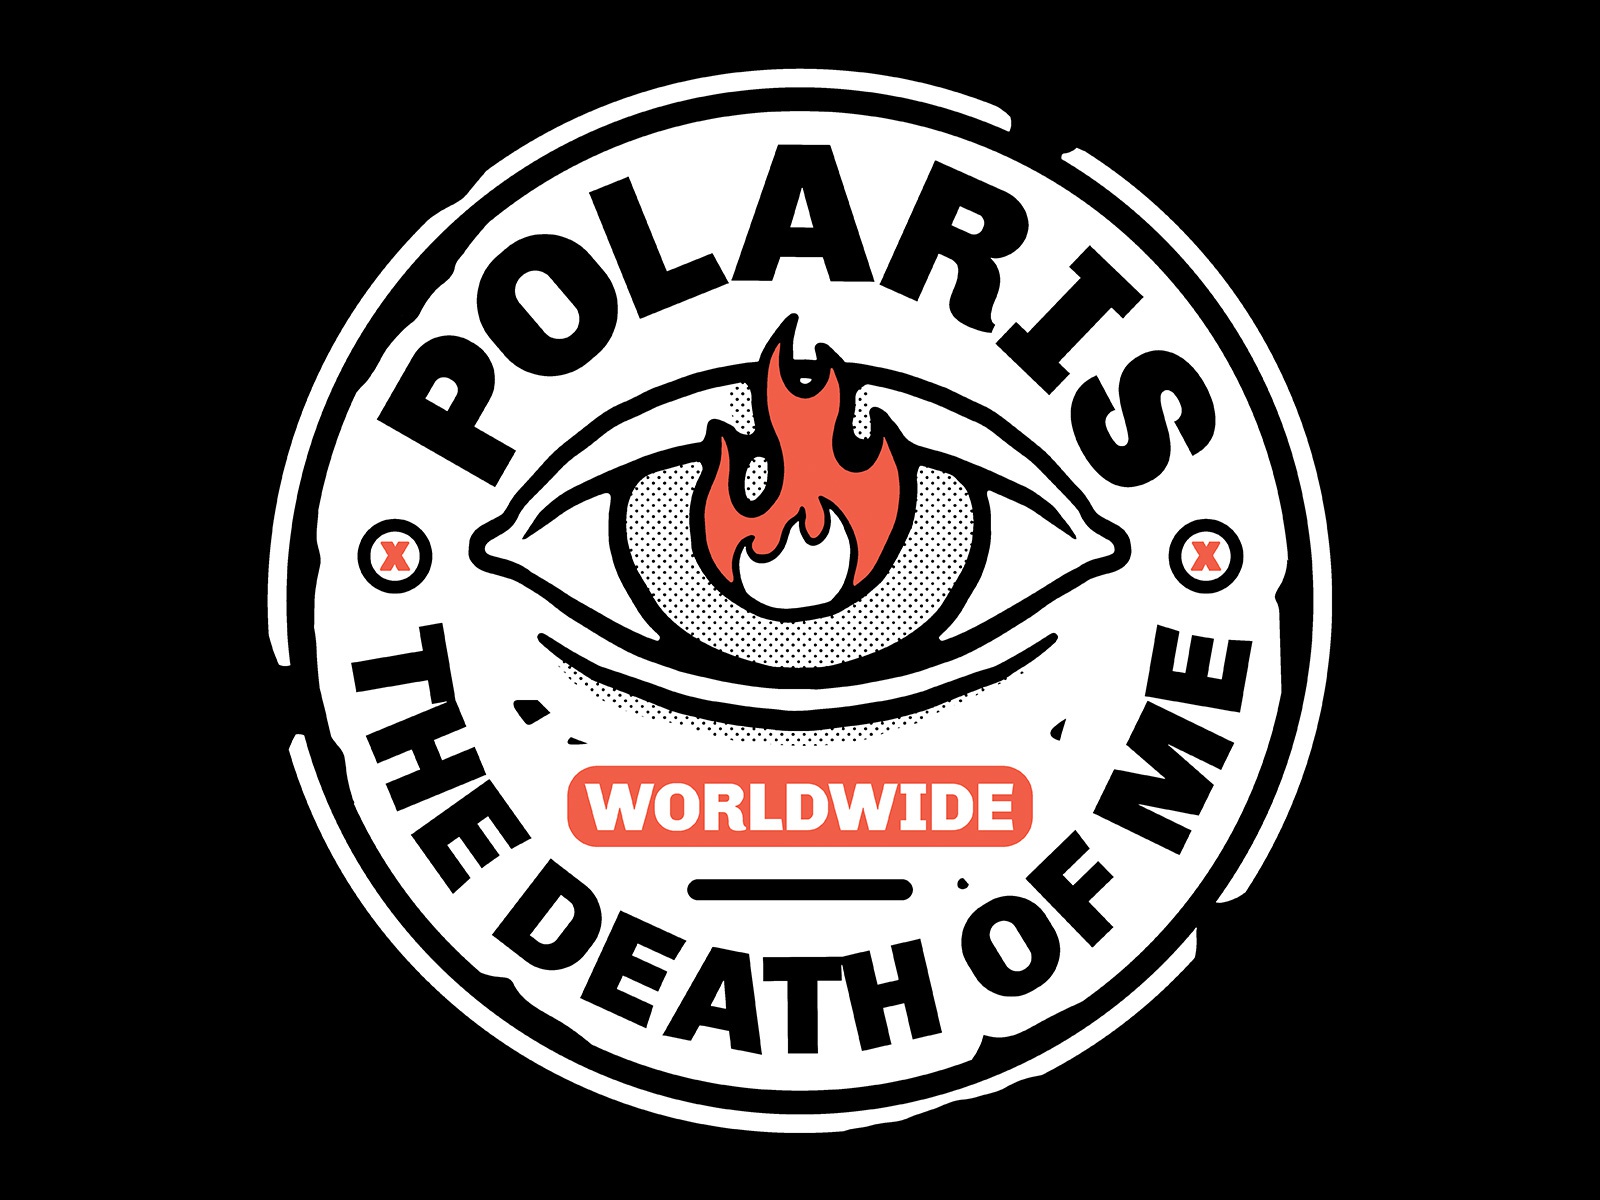 POLARIS Death Of Me badge